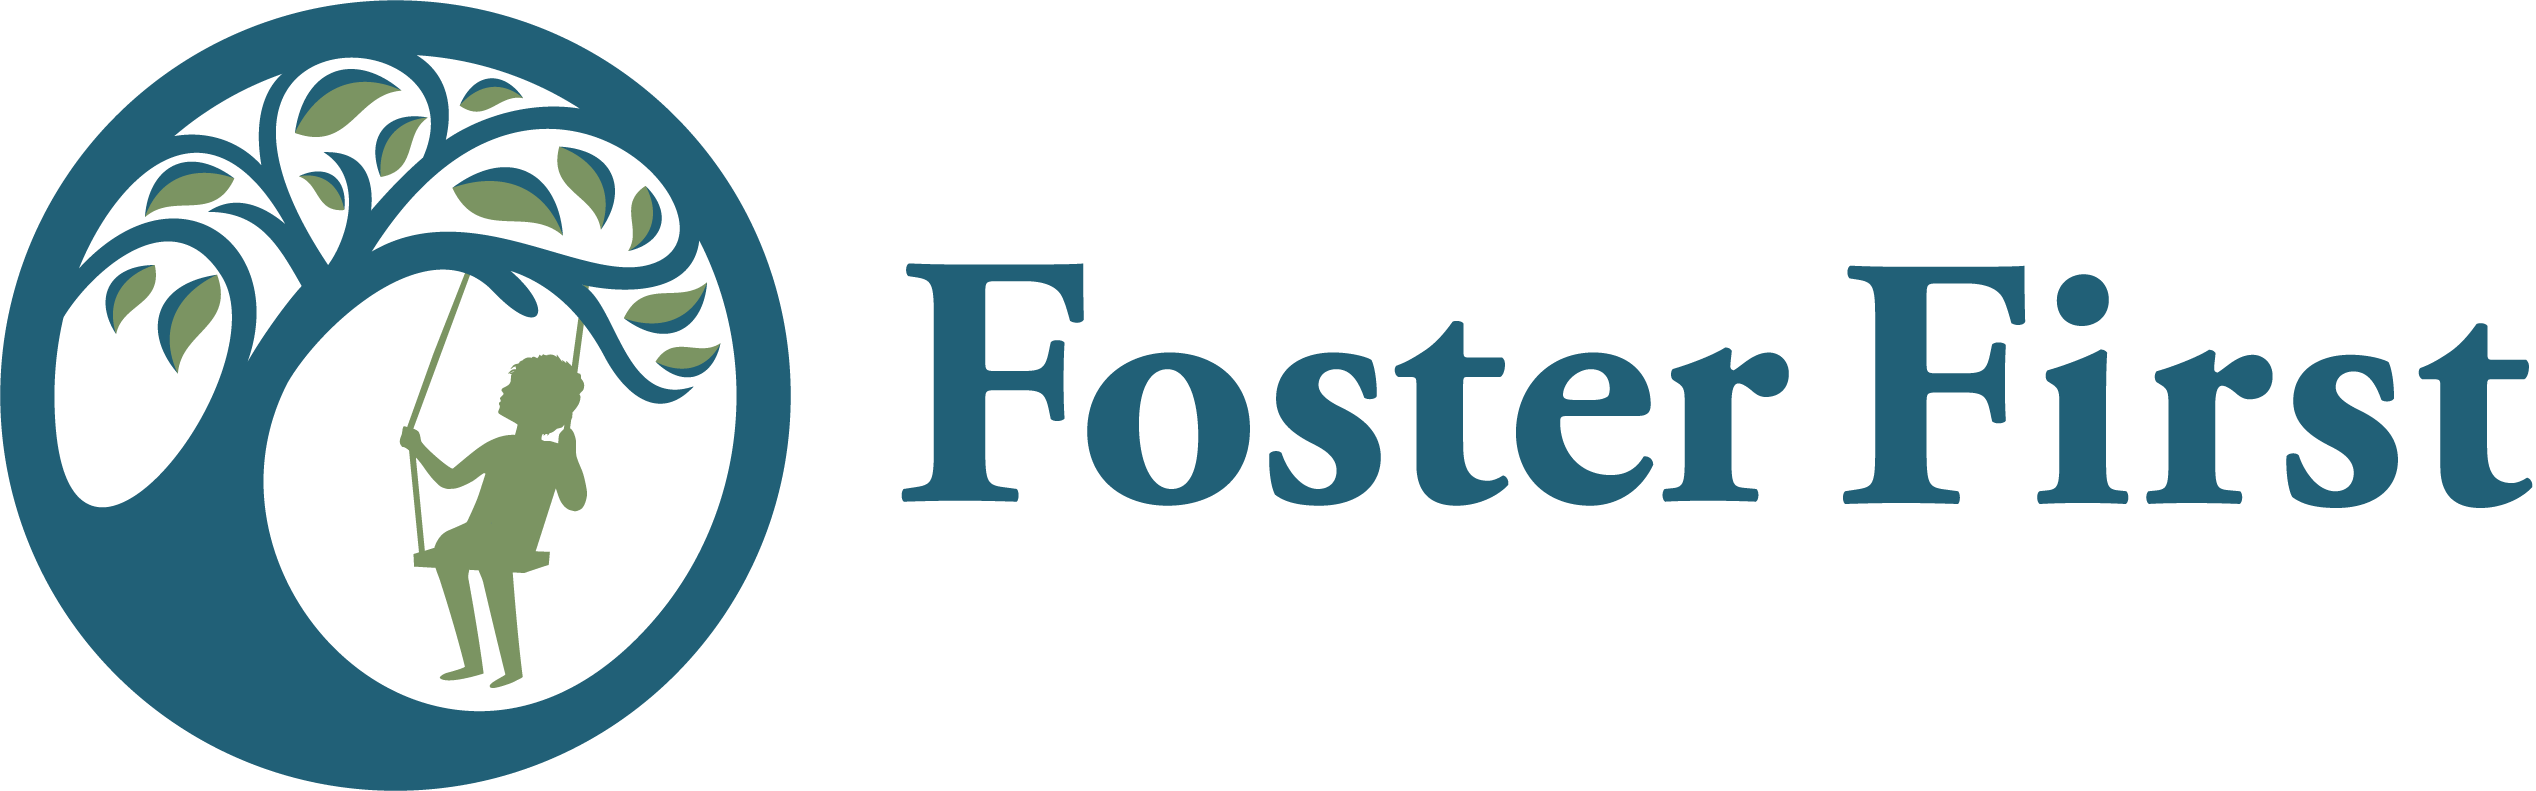 foster firstAsset 2